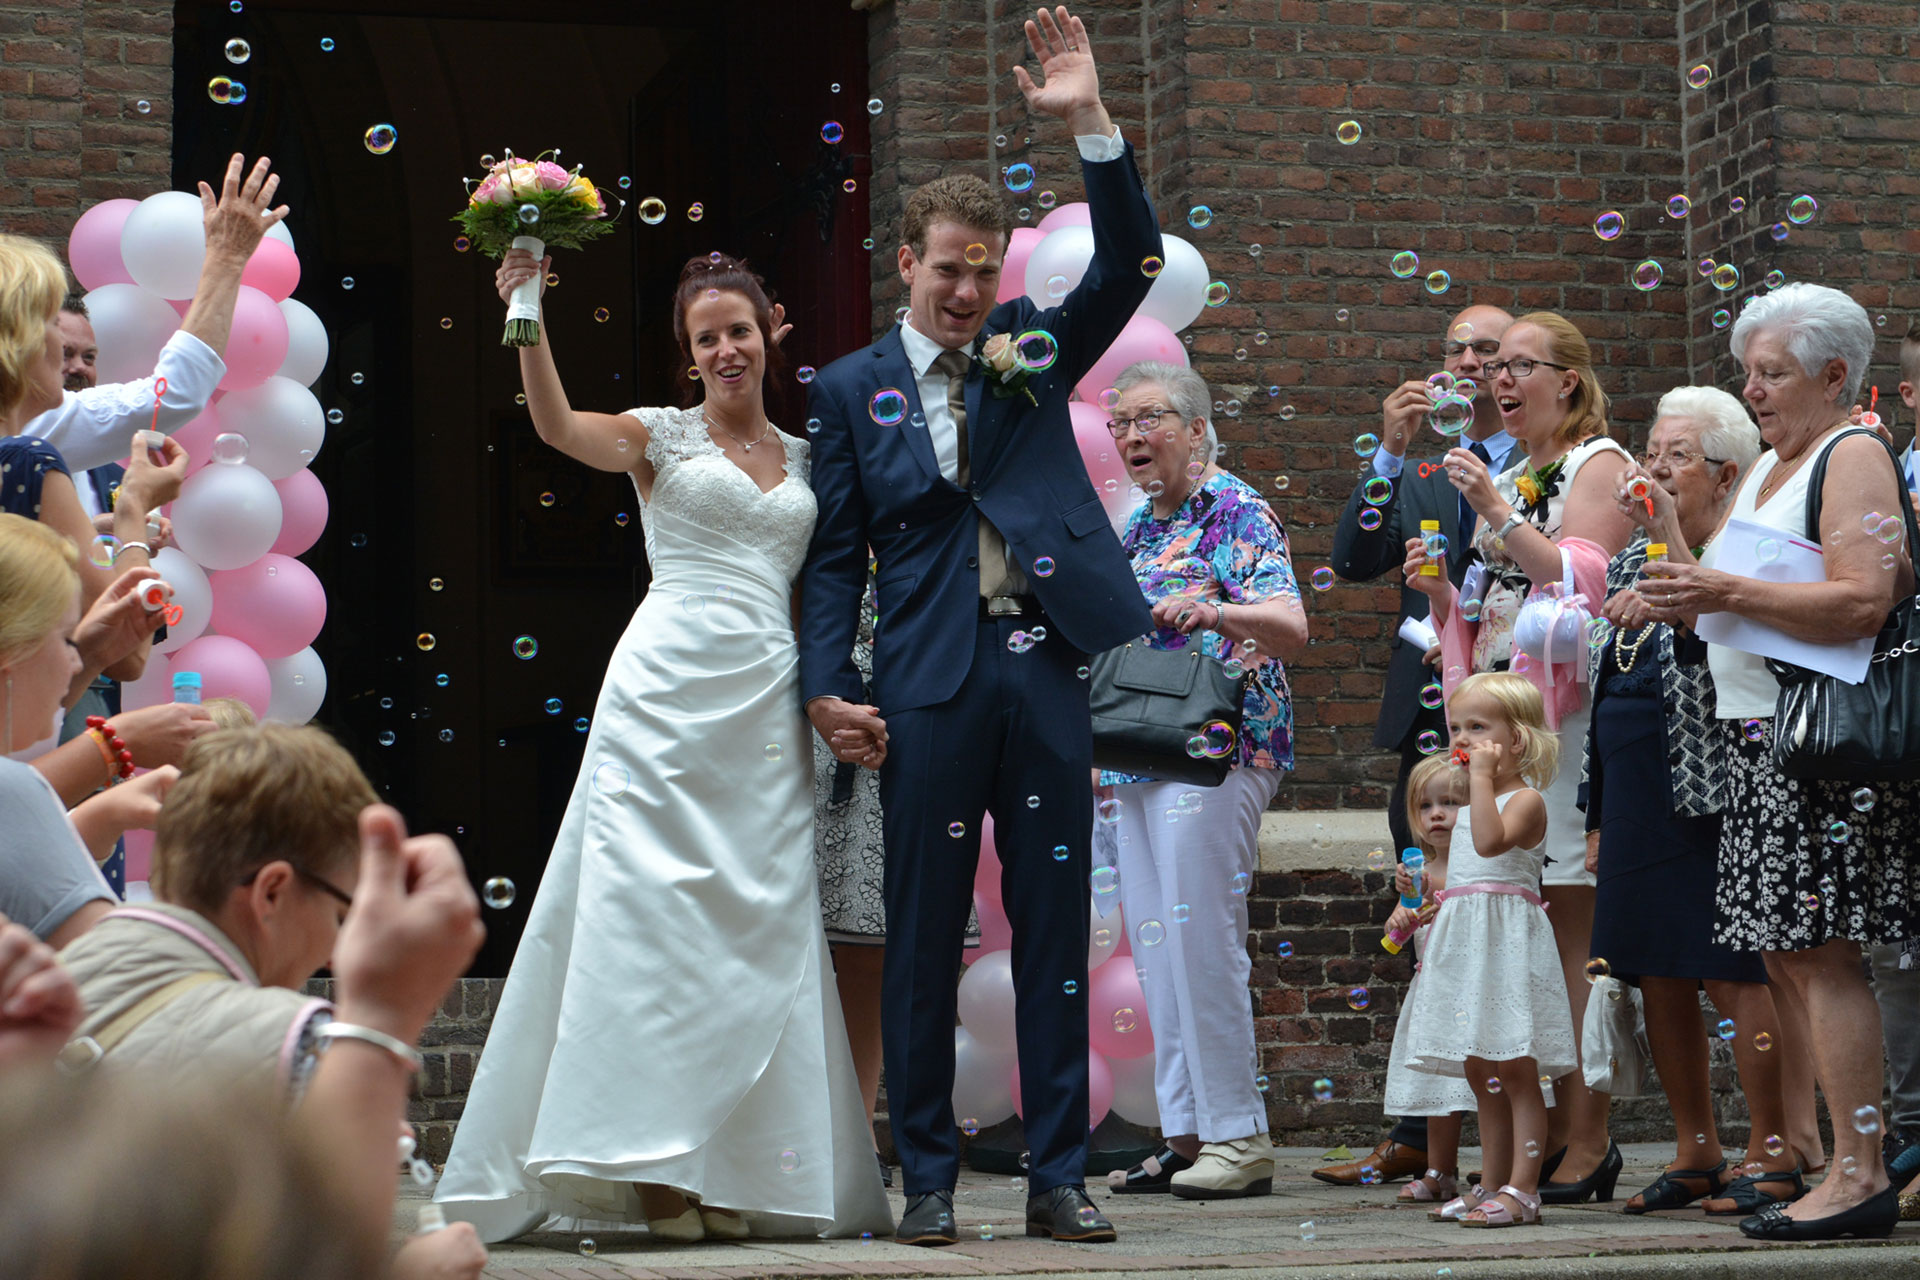 Bruiloft in Maastricht - Bekijk bruidsfotograaf prijzen